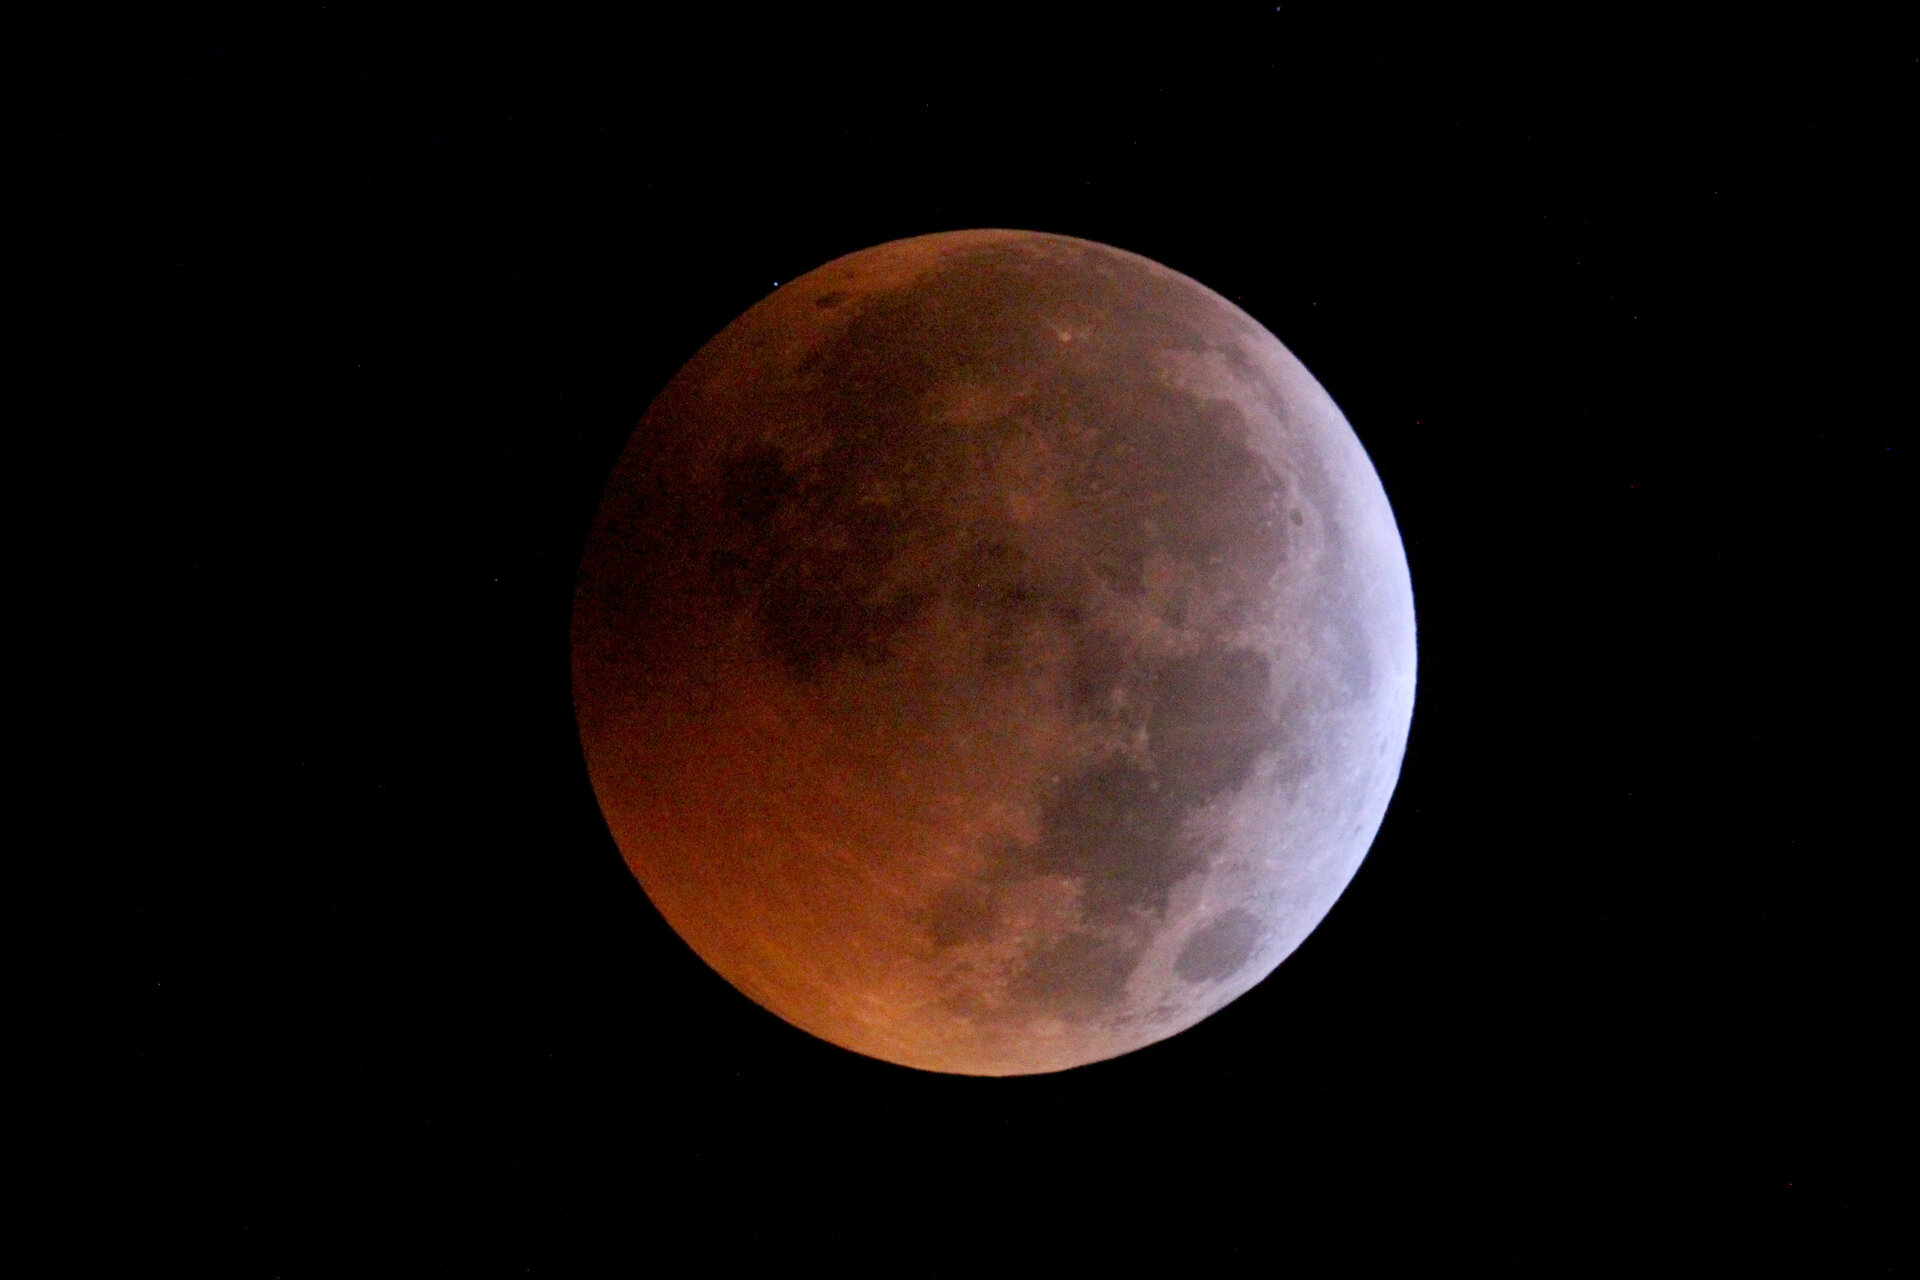 Stellar occultation during lunar eclipse – ingress